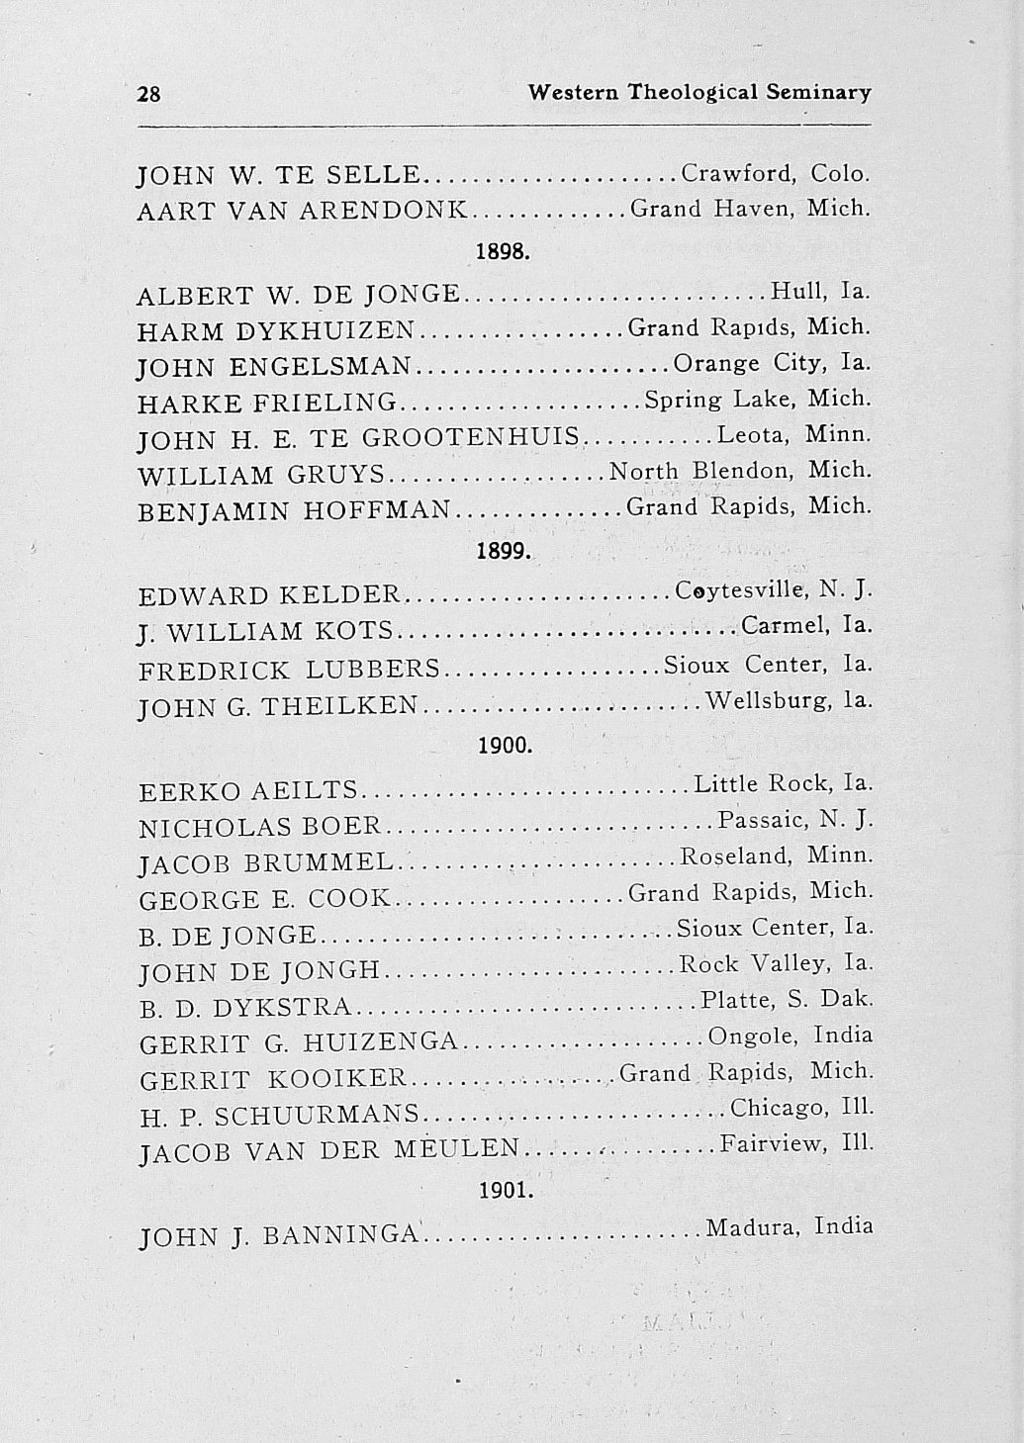 .... 28 Western Theological Seminary JOHN W. TE SELLE... Crawford, Colo. AART VAN ARENDONK... Grand Haven, Mich. 1898. ALBERT W. DE JONGE... HARM DYKHUIZEN... JOHN ENGELSMAN... HARKE FRIELING... JOHN H.